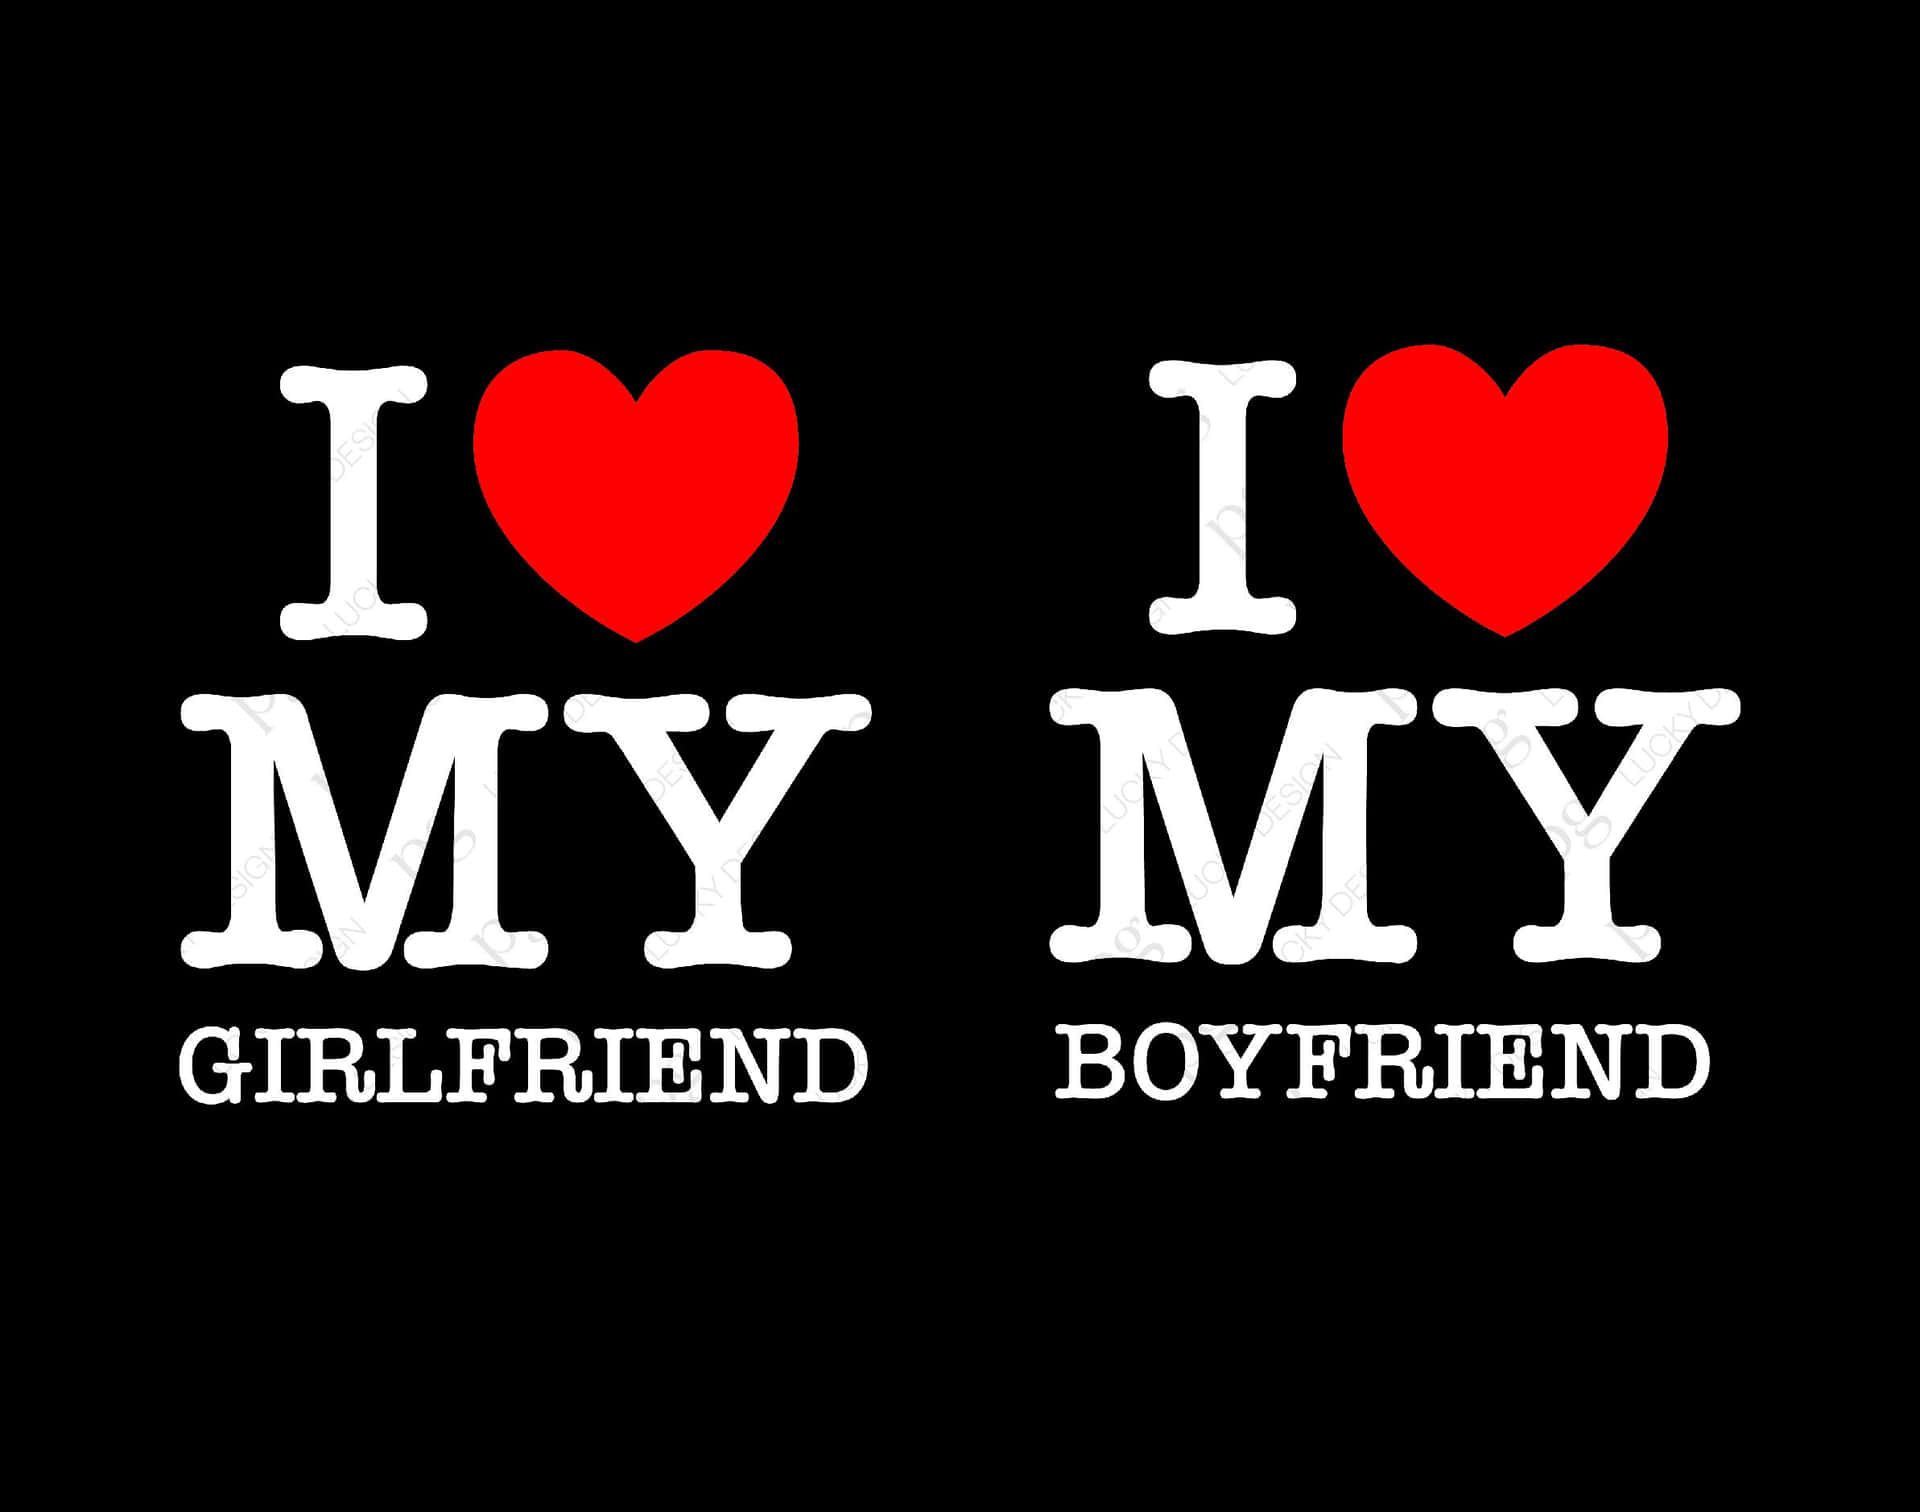 I Love My Girlfriend/Boyfriend Pfp Wallpaper